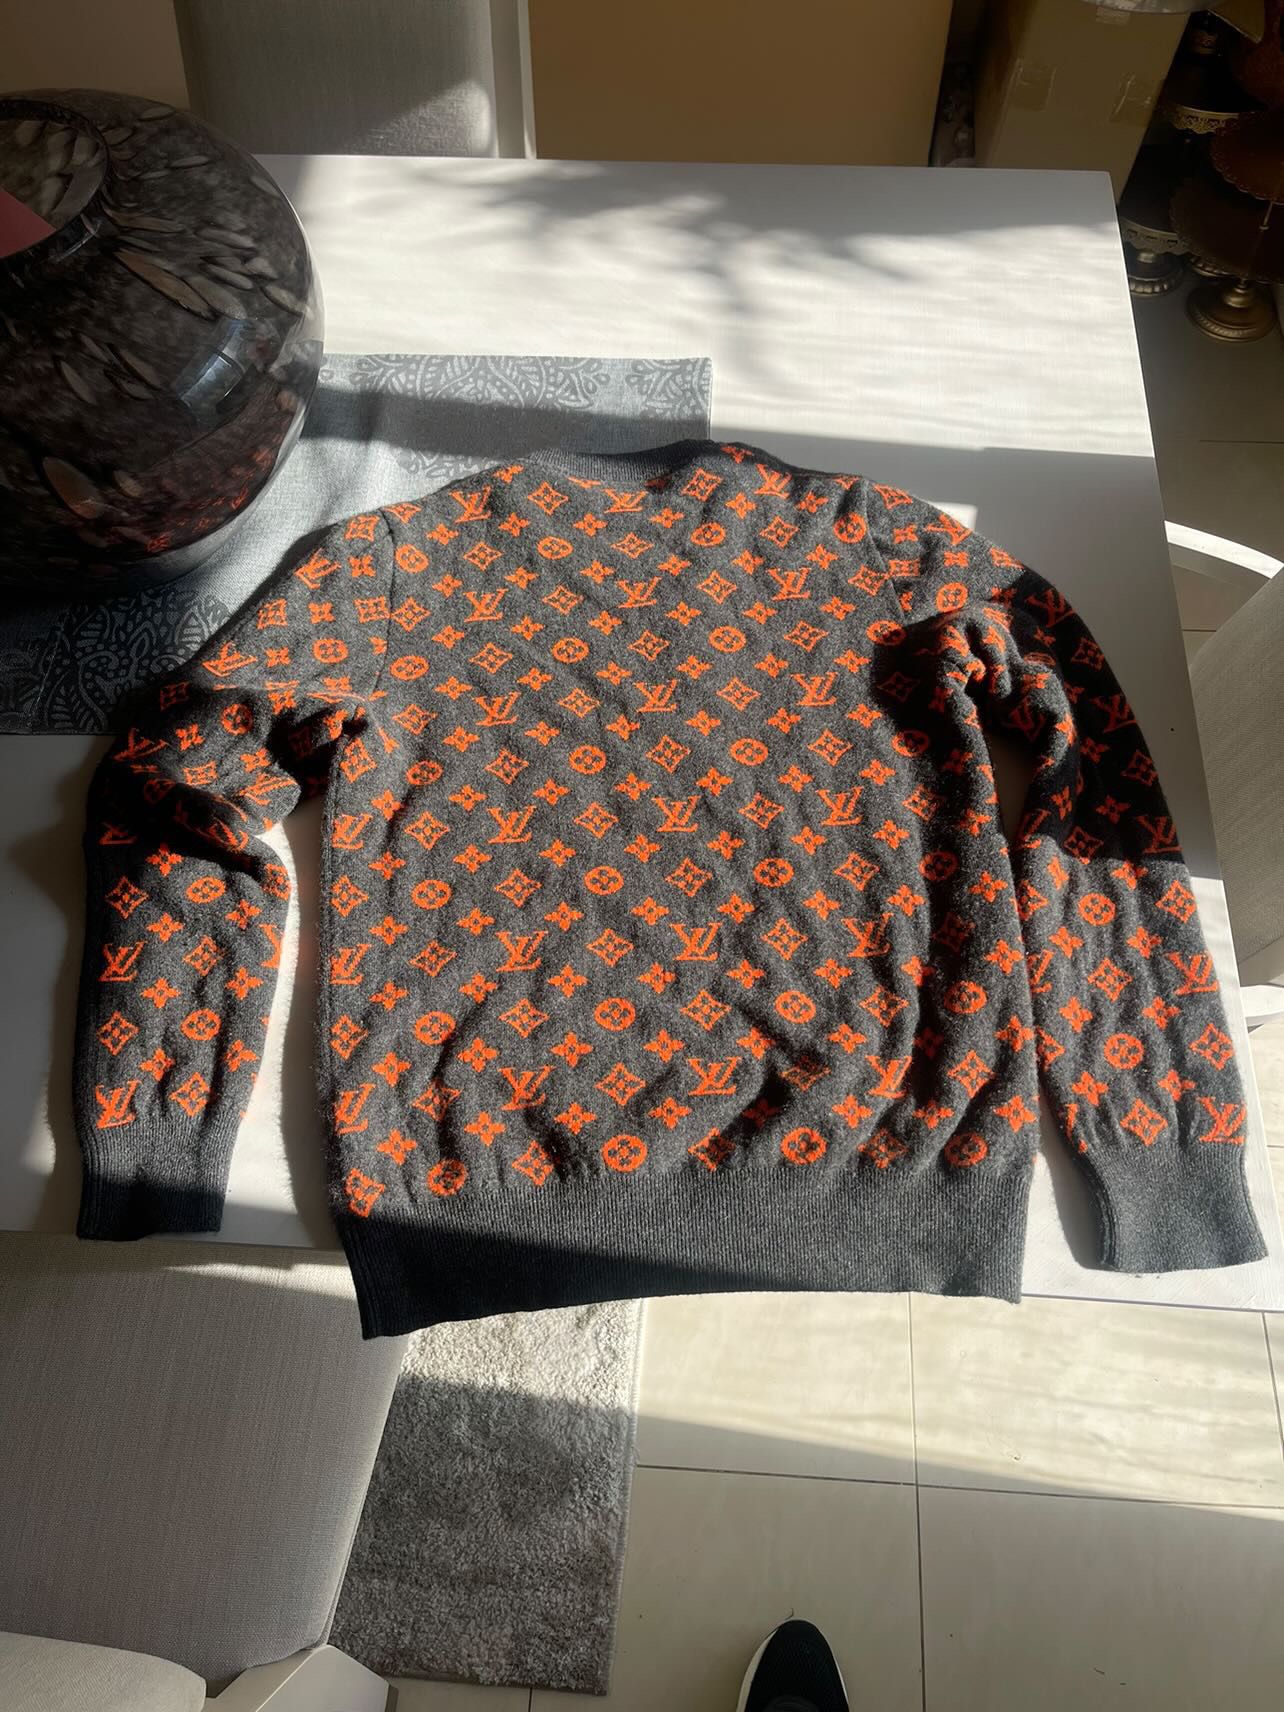 Louis Vuitton Lv Orange Monogram Sweater Shirt